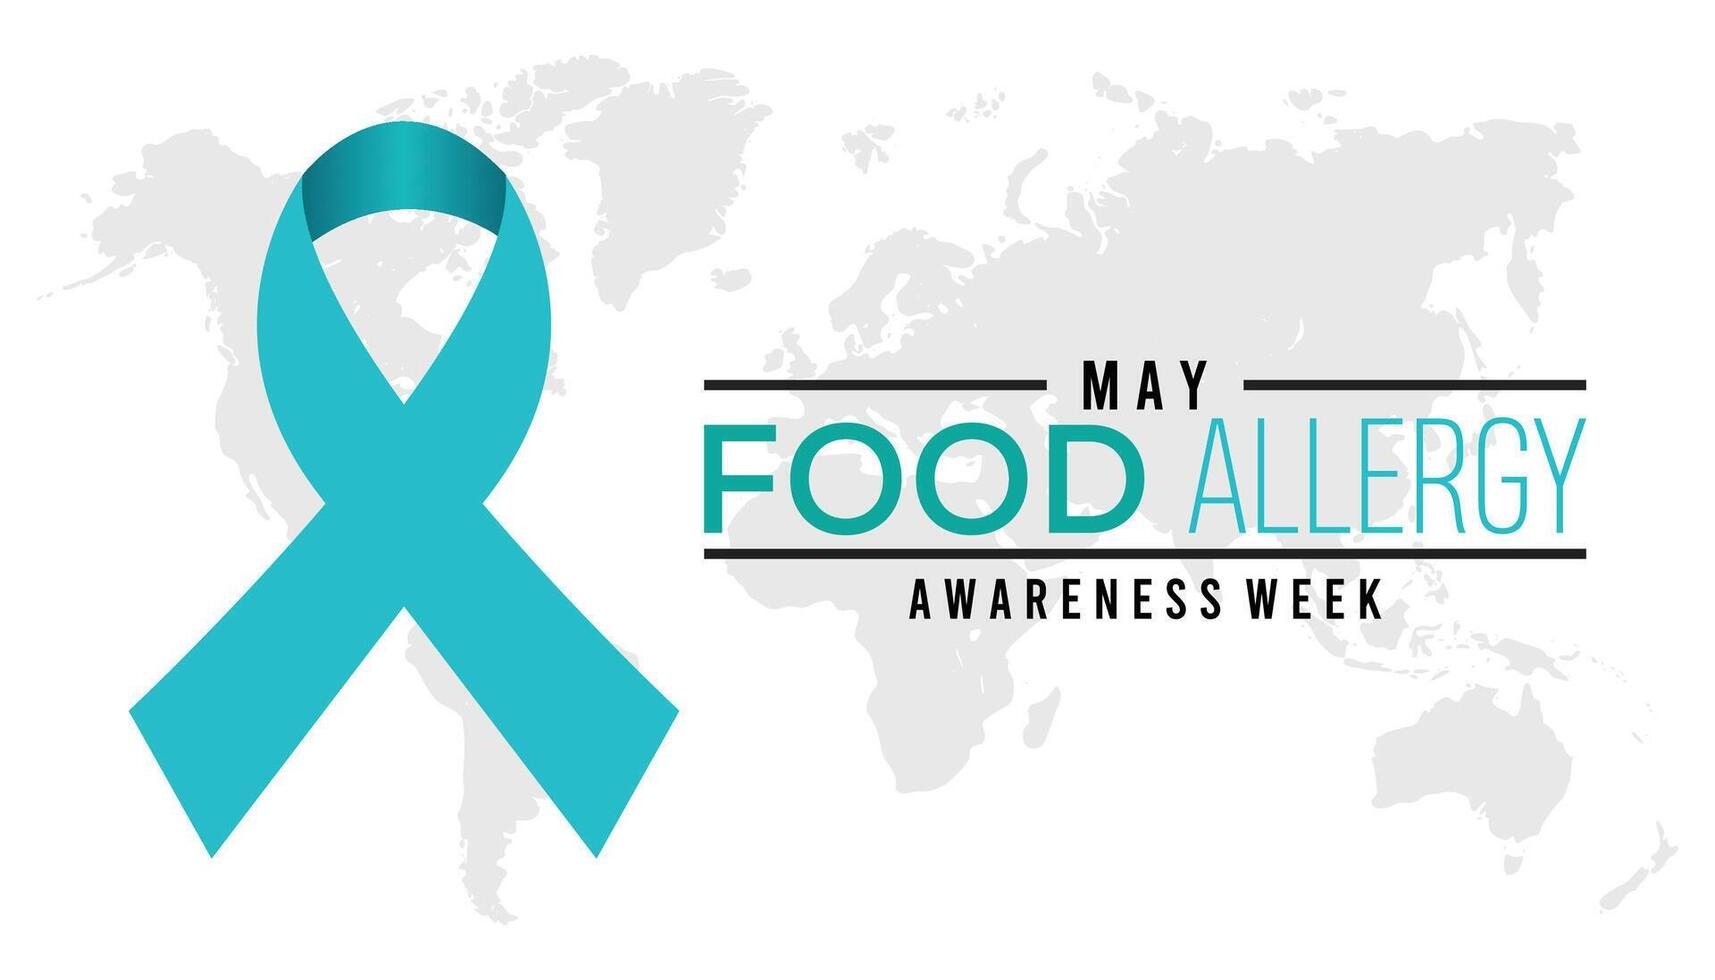 Essen Allergie Bewusstsein Woche beobachtete jeder Jahr im dürfen. Vorlage zum Hintergrund, Banner, Karte, Poster mit Text Inschrift. vektor